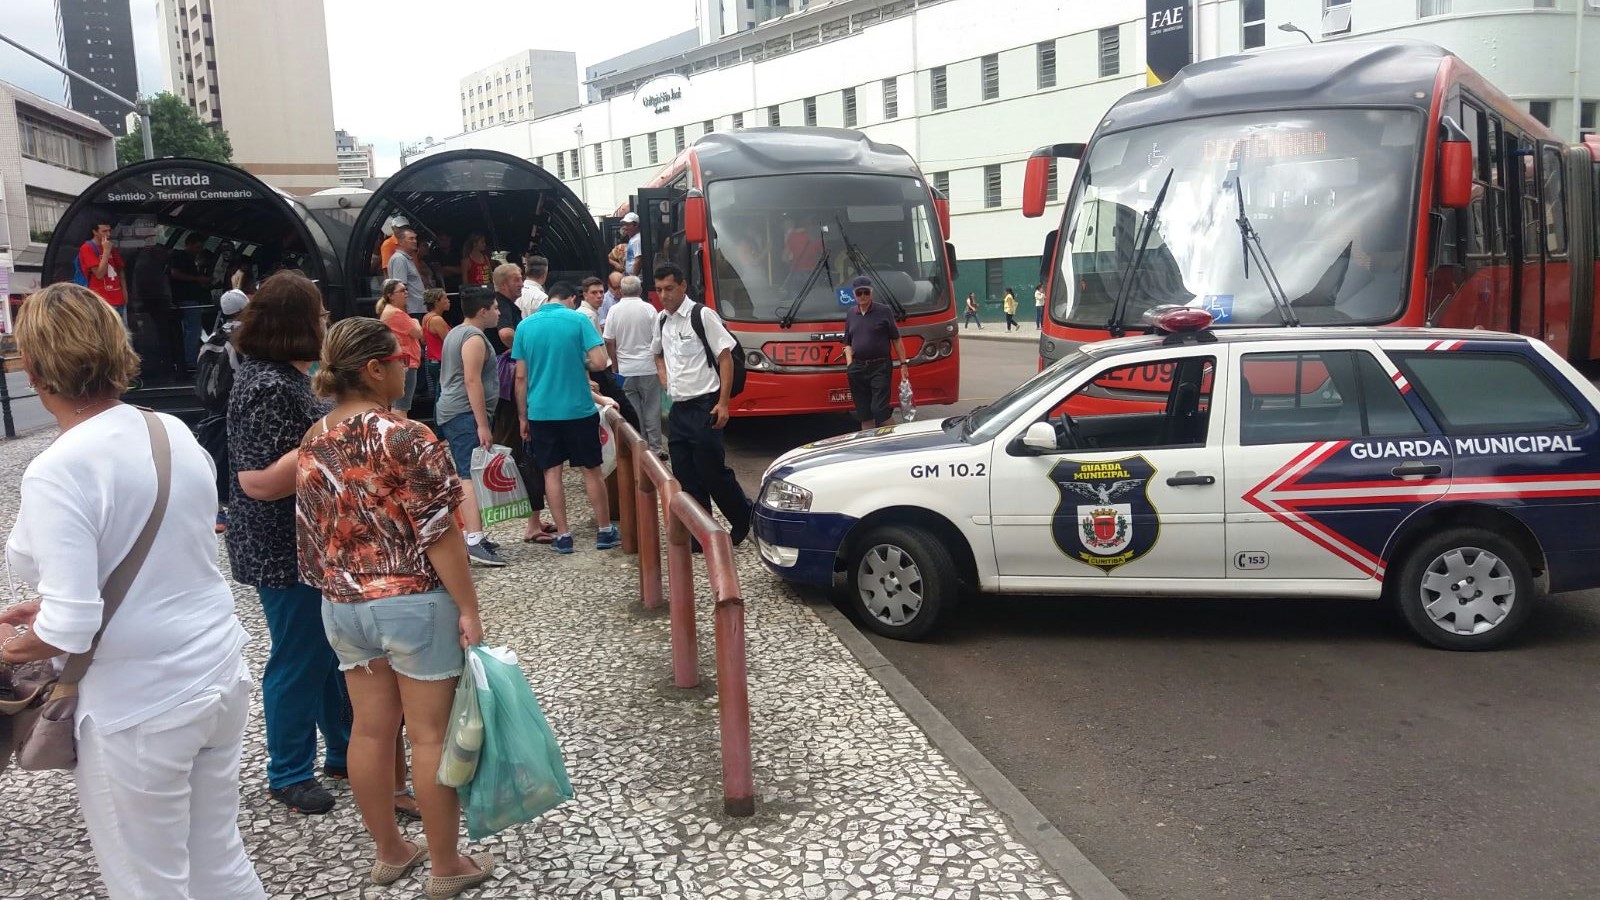 Paralisação na Praça Rui Barbosa durou cerca de meia hora